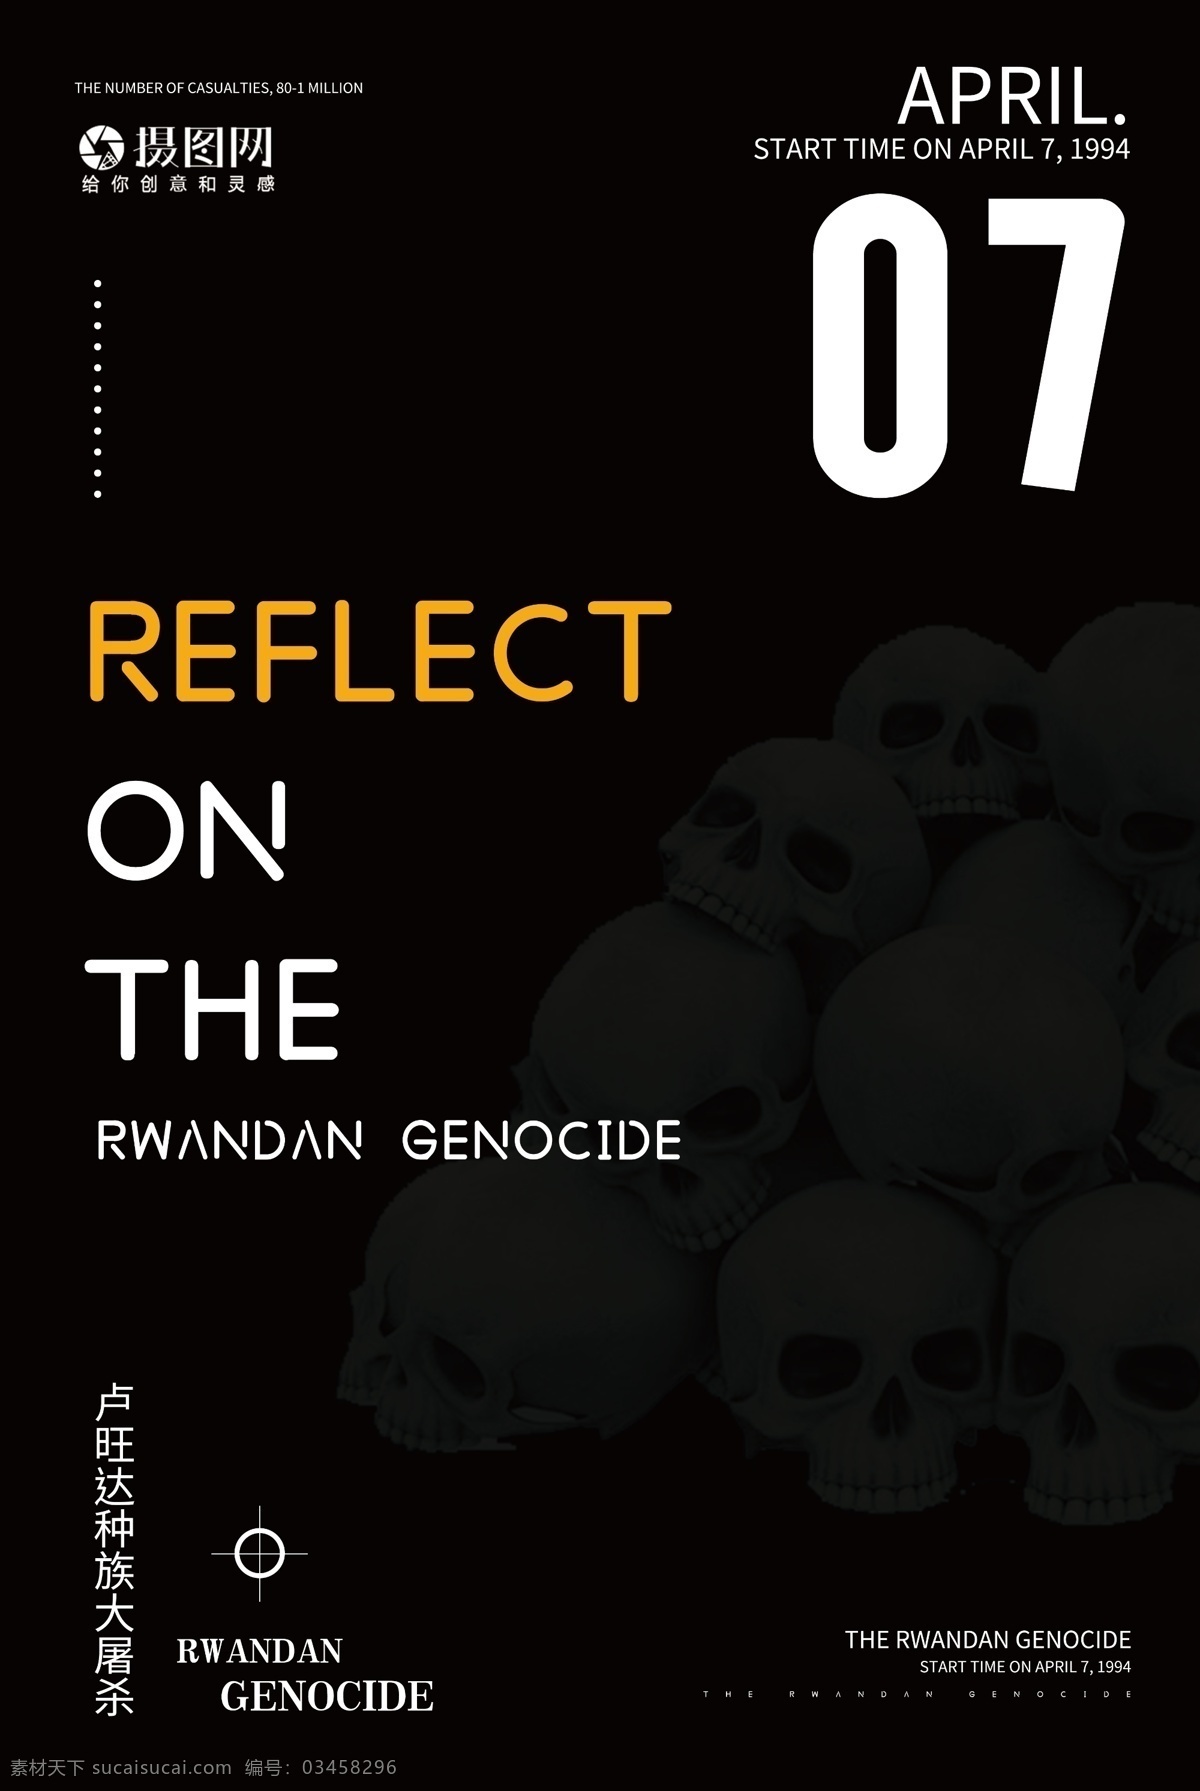 简约 反思 卢旺达 大屠杀 国际 日 英文 海报 屠杀 种族灭绝 纯英文海报 英文海报